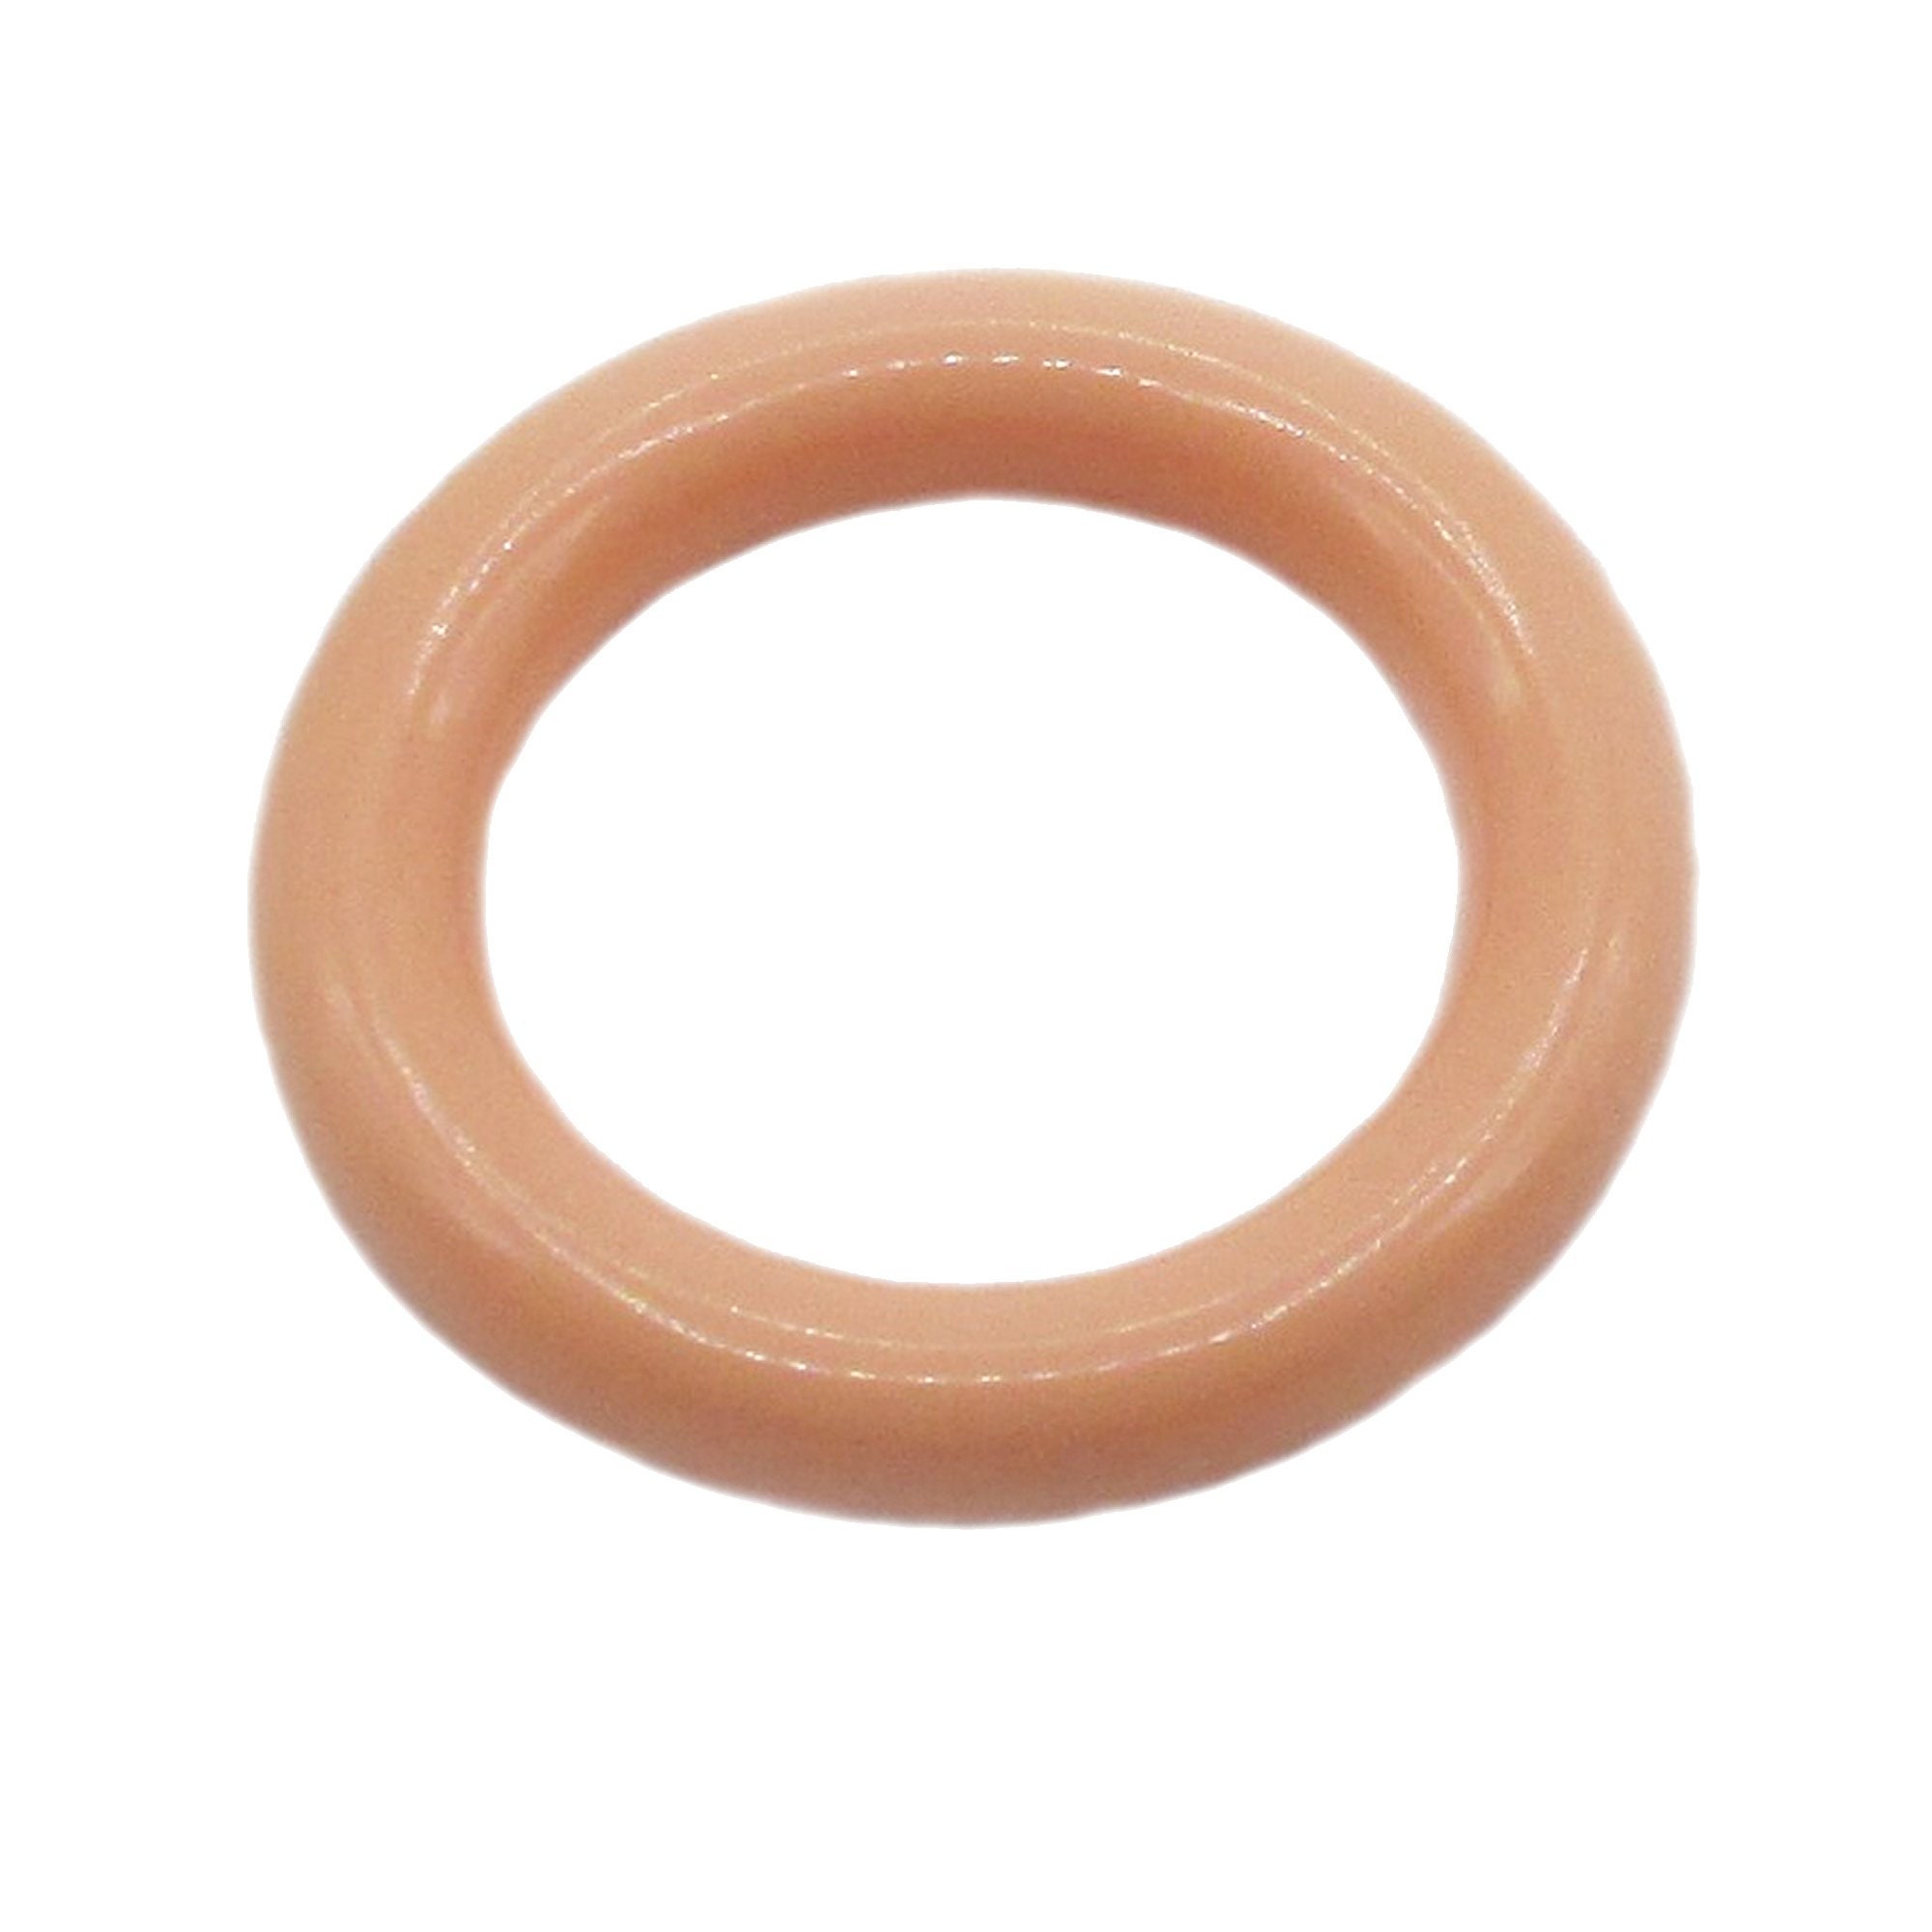 1.5-inch Rings X 6, Pastel Rings, Plastic Rings, Craft Rings 